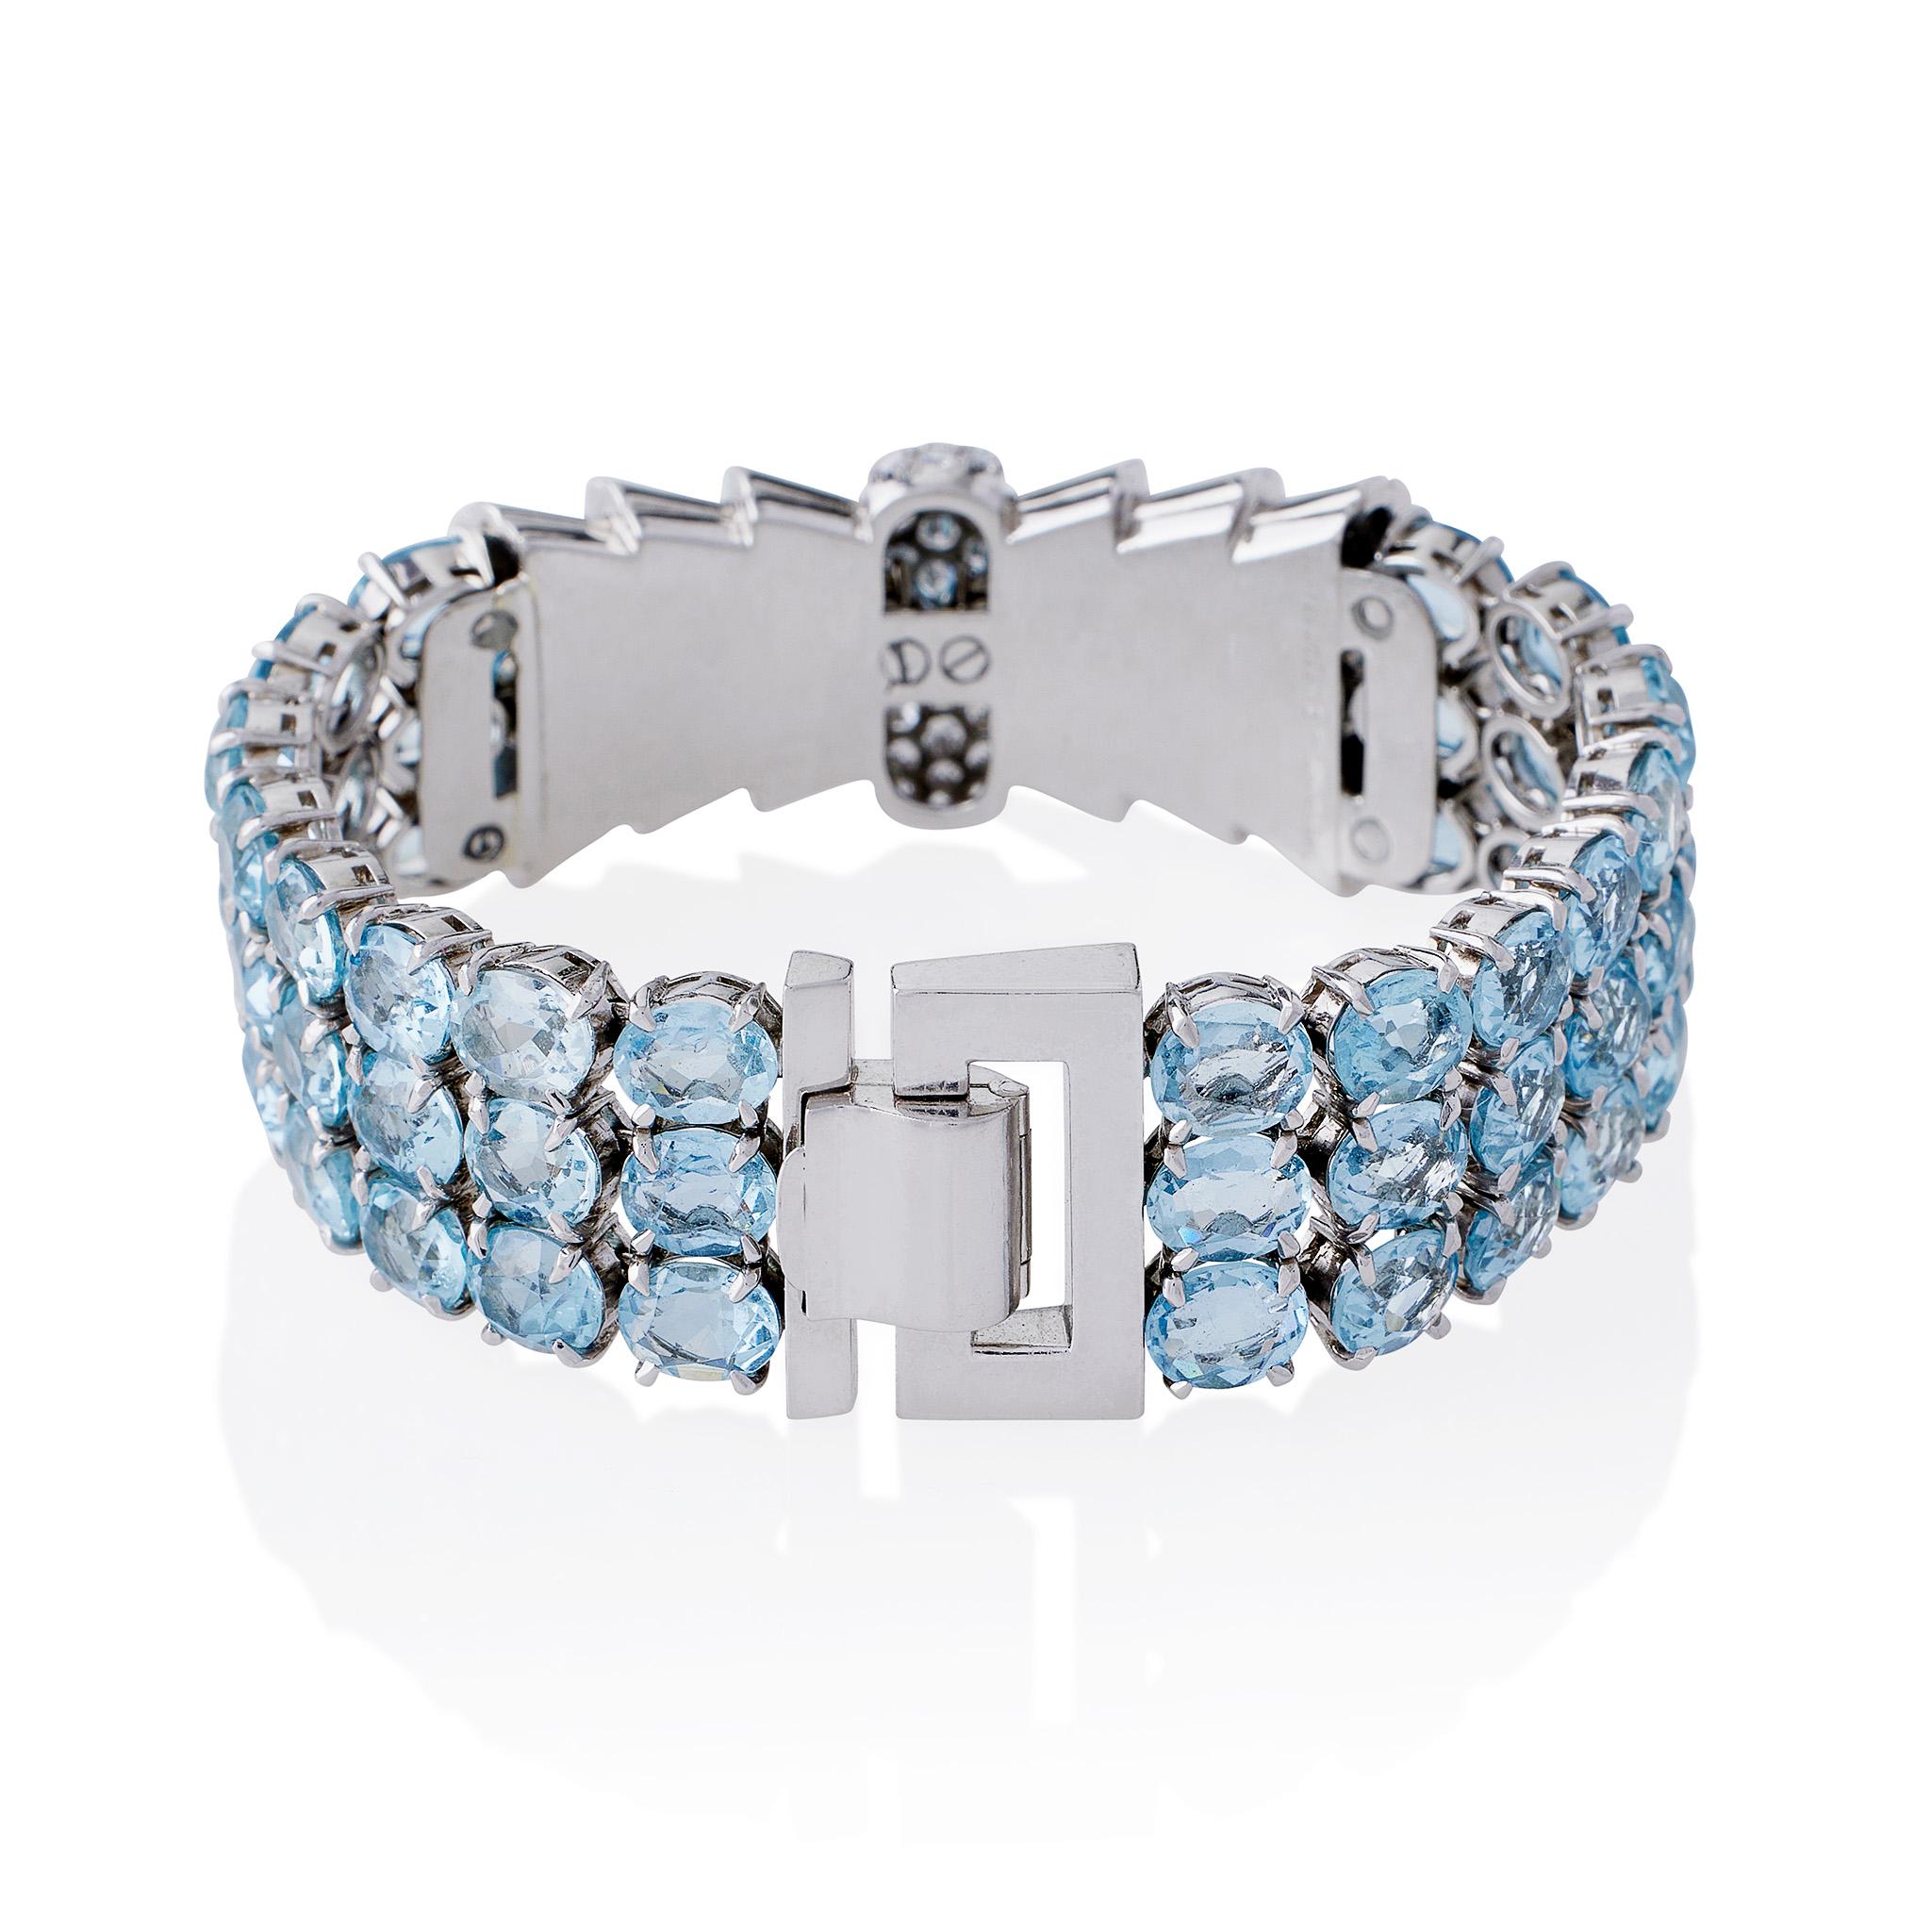 Dieses Aquamarin- und Diamantarmband von Tiffany & Co. stammt aus den 1930er Jahren und wurde in Frankreich hergestellt. Das Armband besteht aus flexiblen Aquamarinen im Ovalschliff mit einem ungefähren Gesamtgewicht von 32,40 Karat, die in der